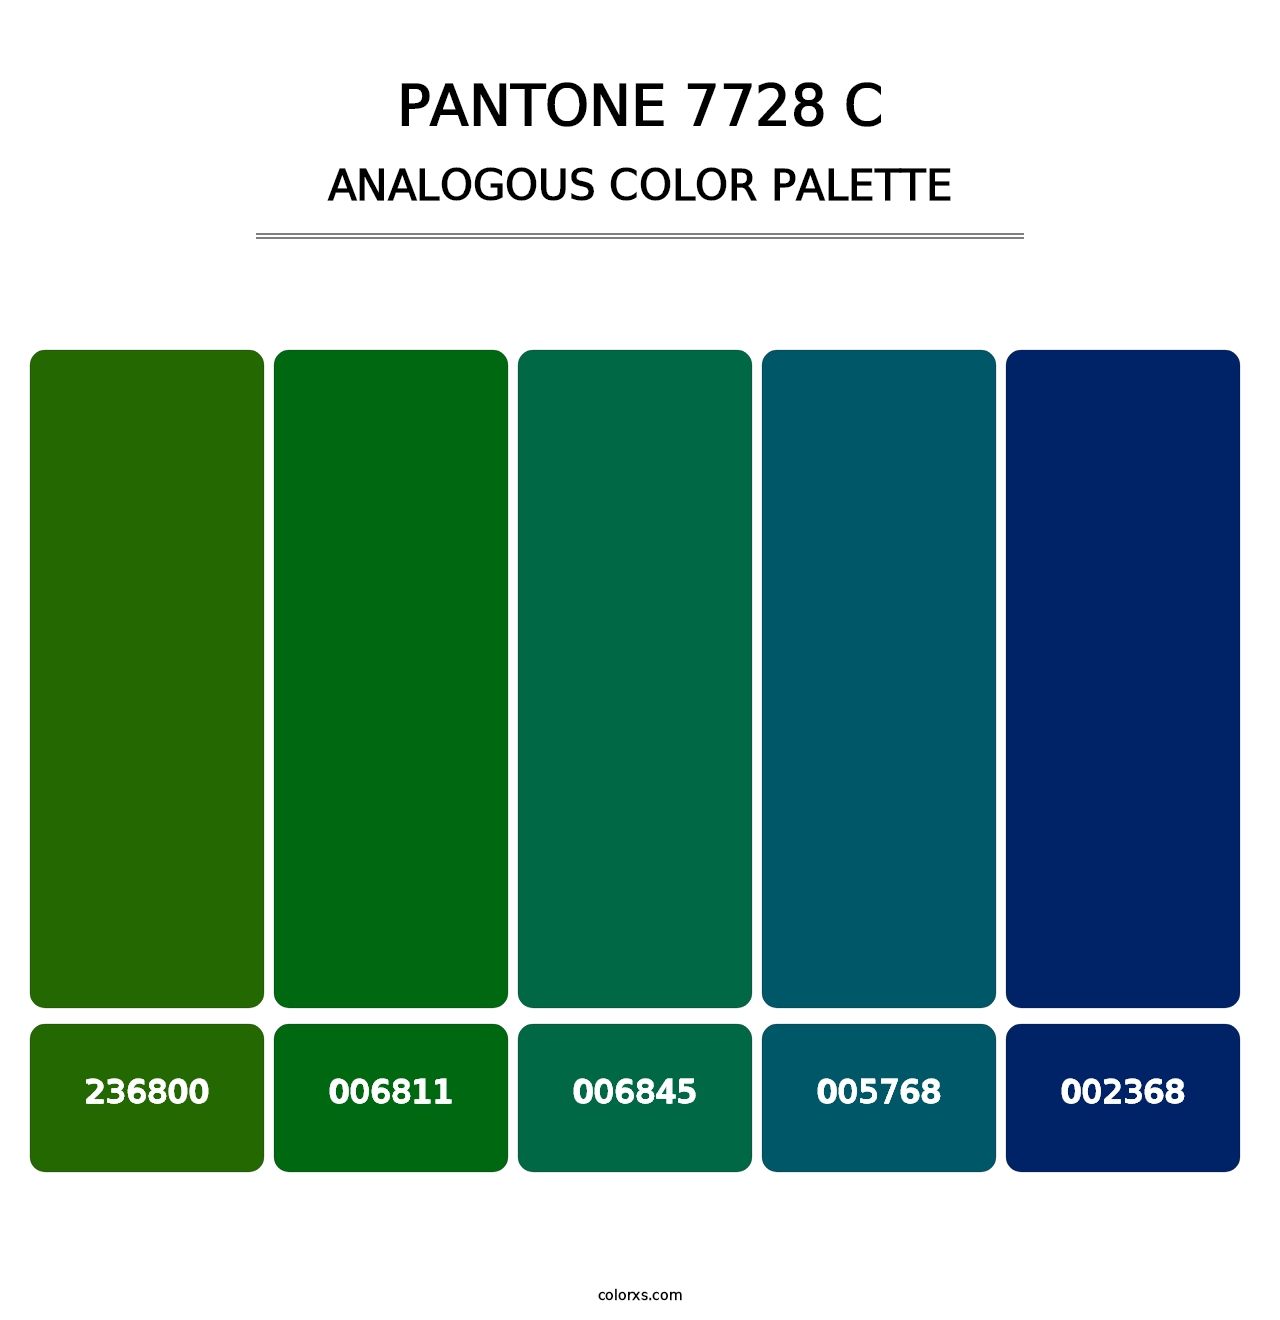 PANTONE 7728 C - Analogous Color Palette